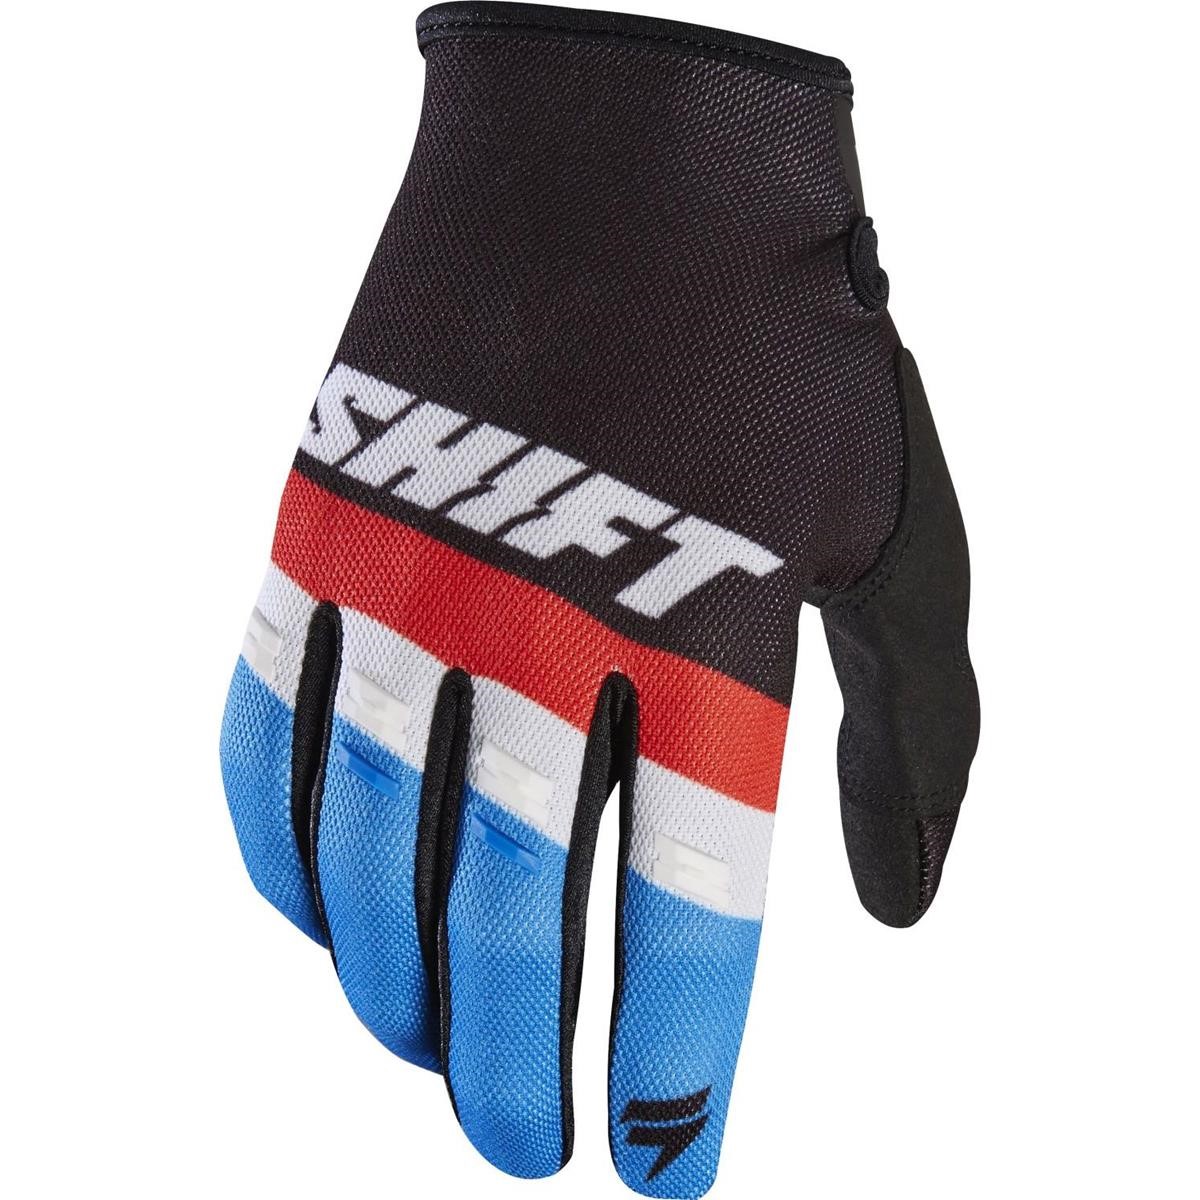 Shift Gloves Whit3 Air Black -Tarmac